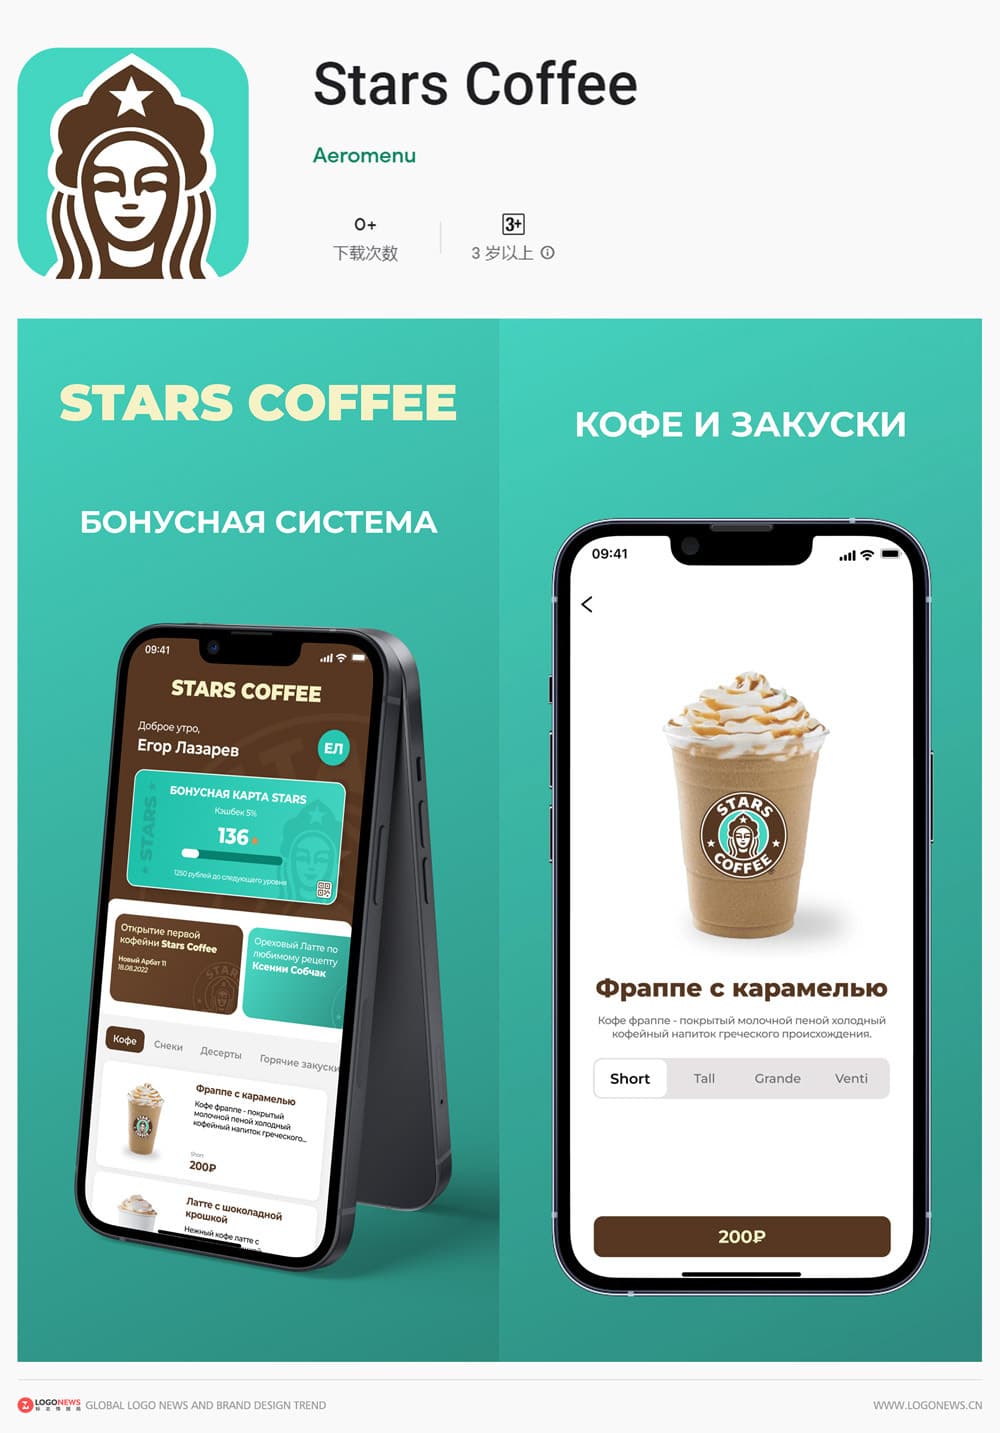 俄羅斯星巴克更名為「Stars Coffee」並啟用新LOGO 7